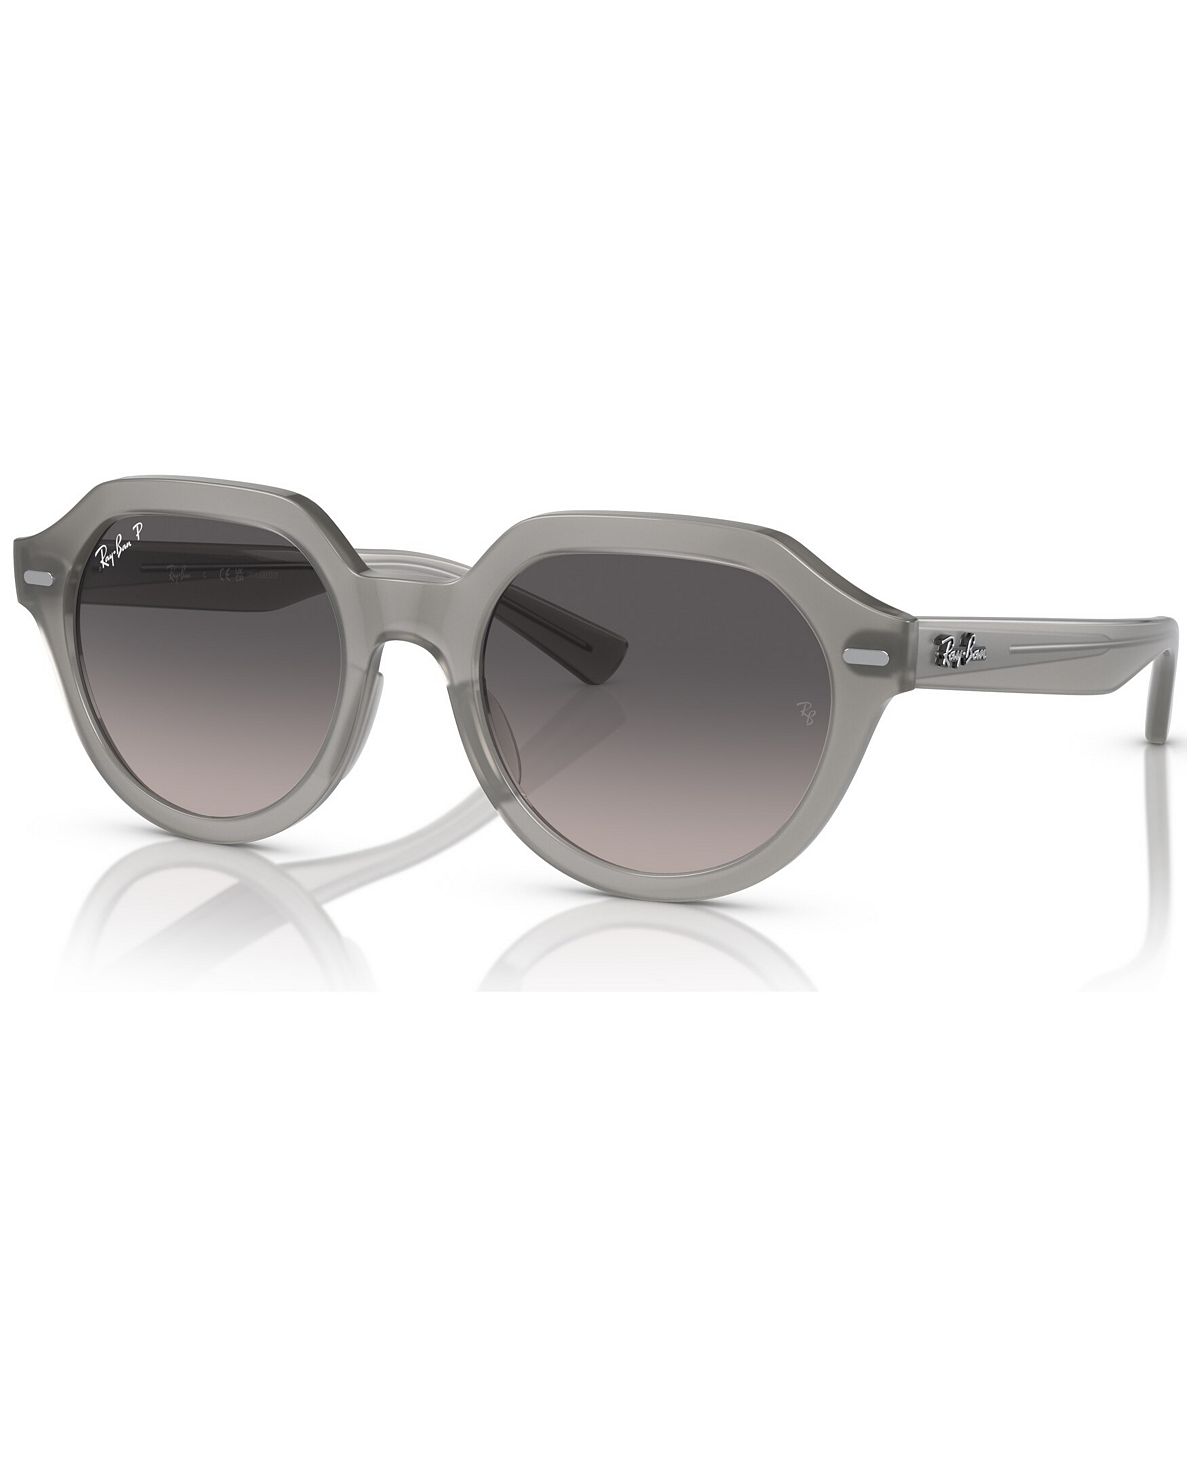 Поляризованные солнцезащитные очки унисекс, RB4399 GINA Ray-Ban, серый